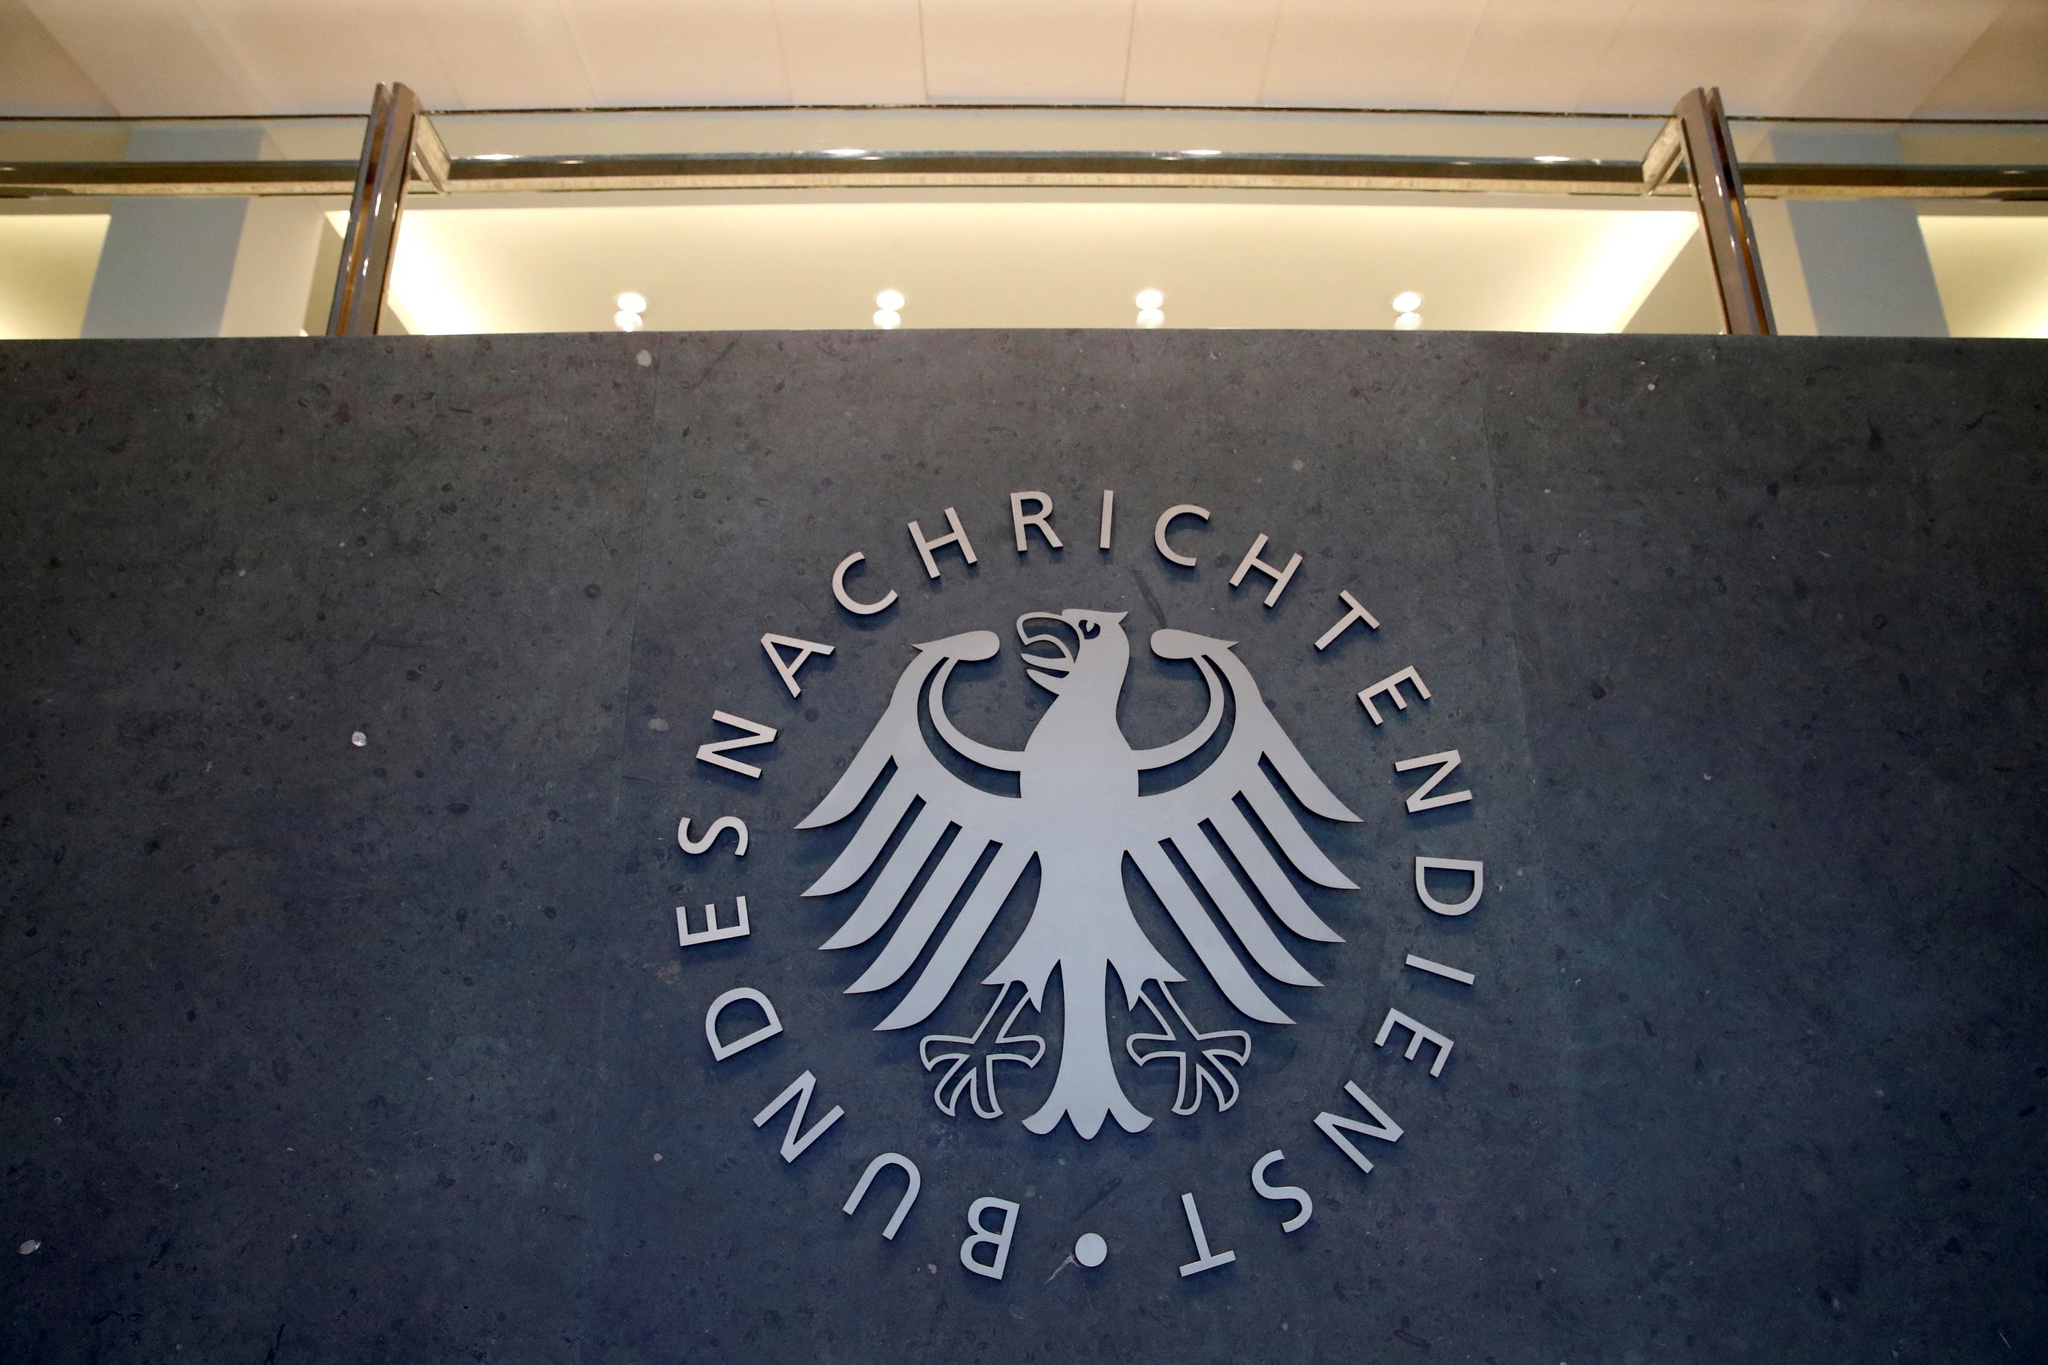 Deutscher Geheimdienstagent wegen Spionageverdachts für Russland festgenommen |  Spionage